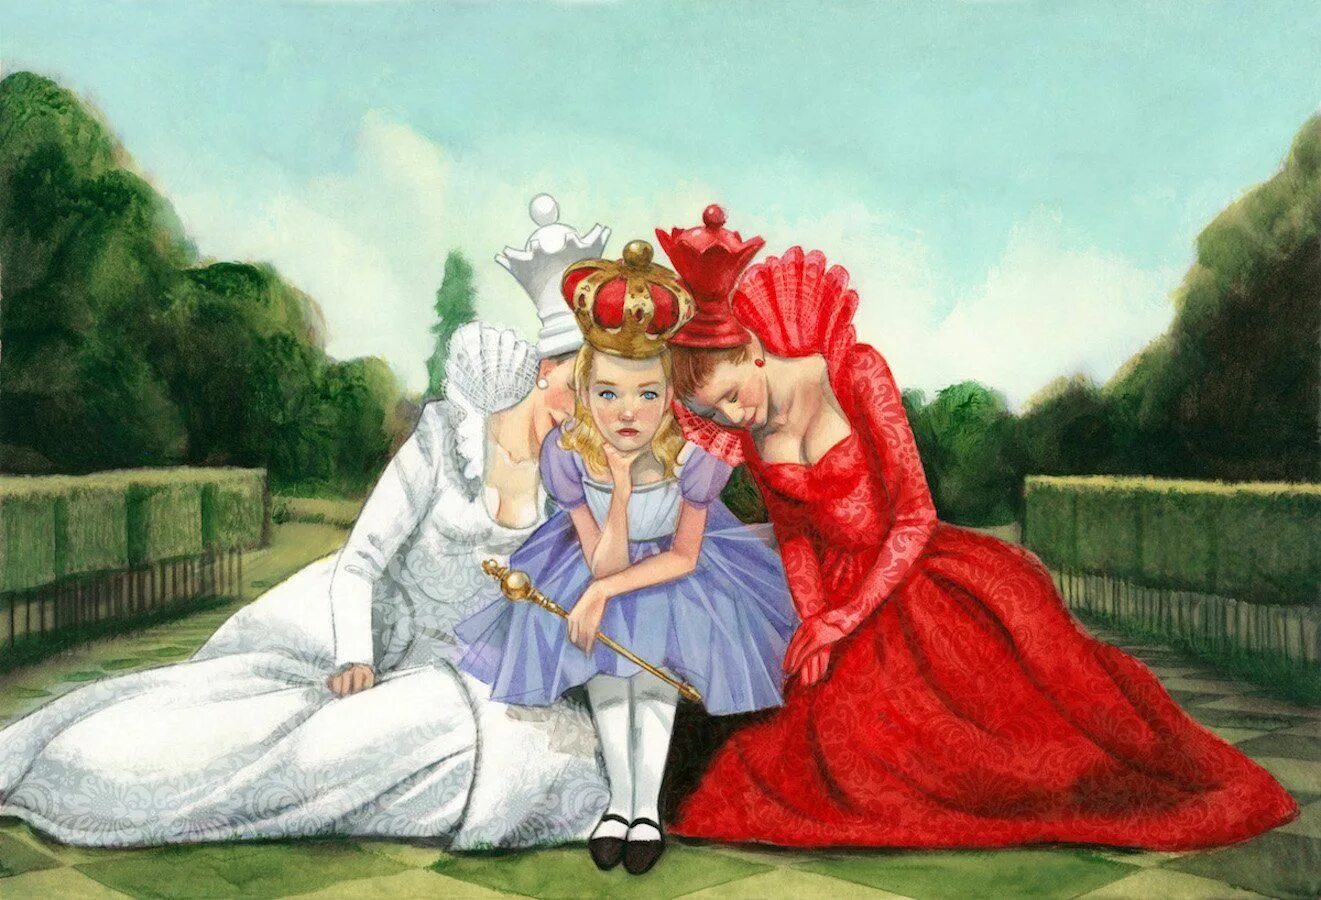 Алиса в стране чудес 1 сказка. Льюис Кэрролл Алиса в стране чудес Королева. Алиса в Зазеркалье Королева. Королева Льюис Кэрролла из Алиса в Зазеркалье. Шахматная Королева Алиса в стране чудес.